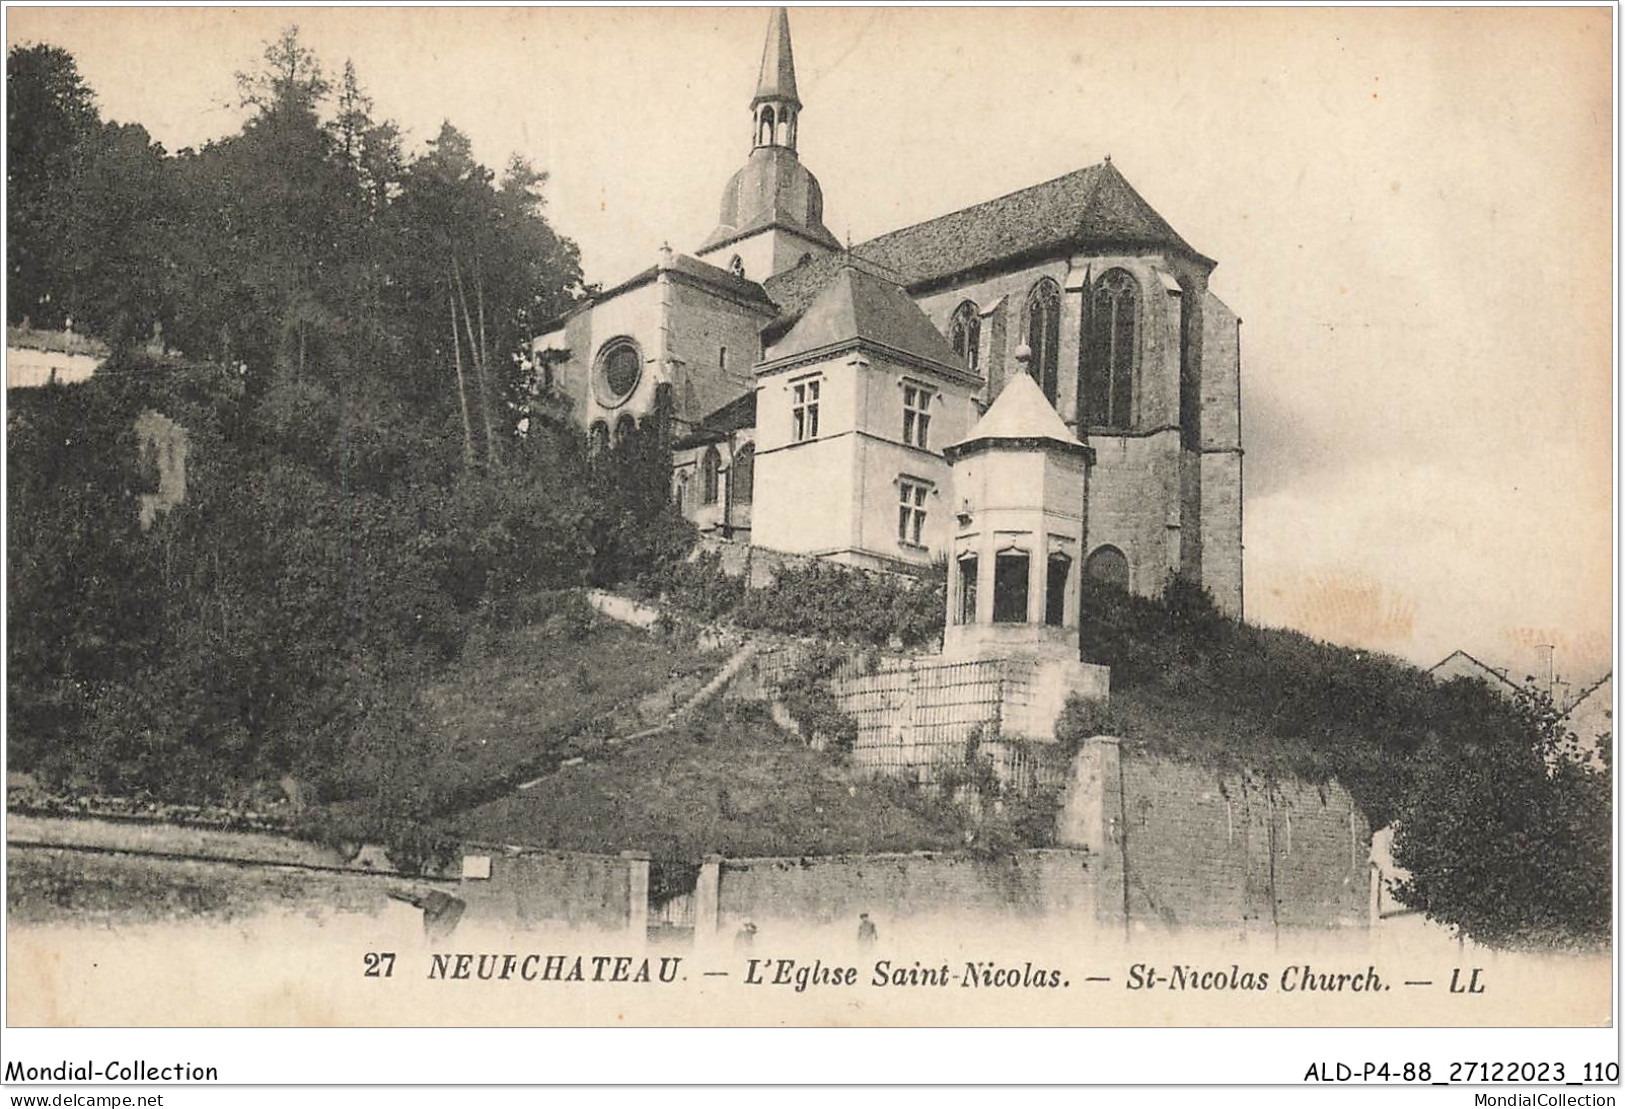 ALDP4-88-0356 - NEUFCHATEAU - L'église Saint-nicolas - Neufchateau